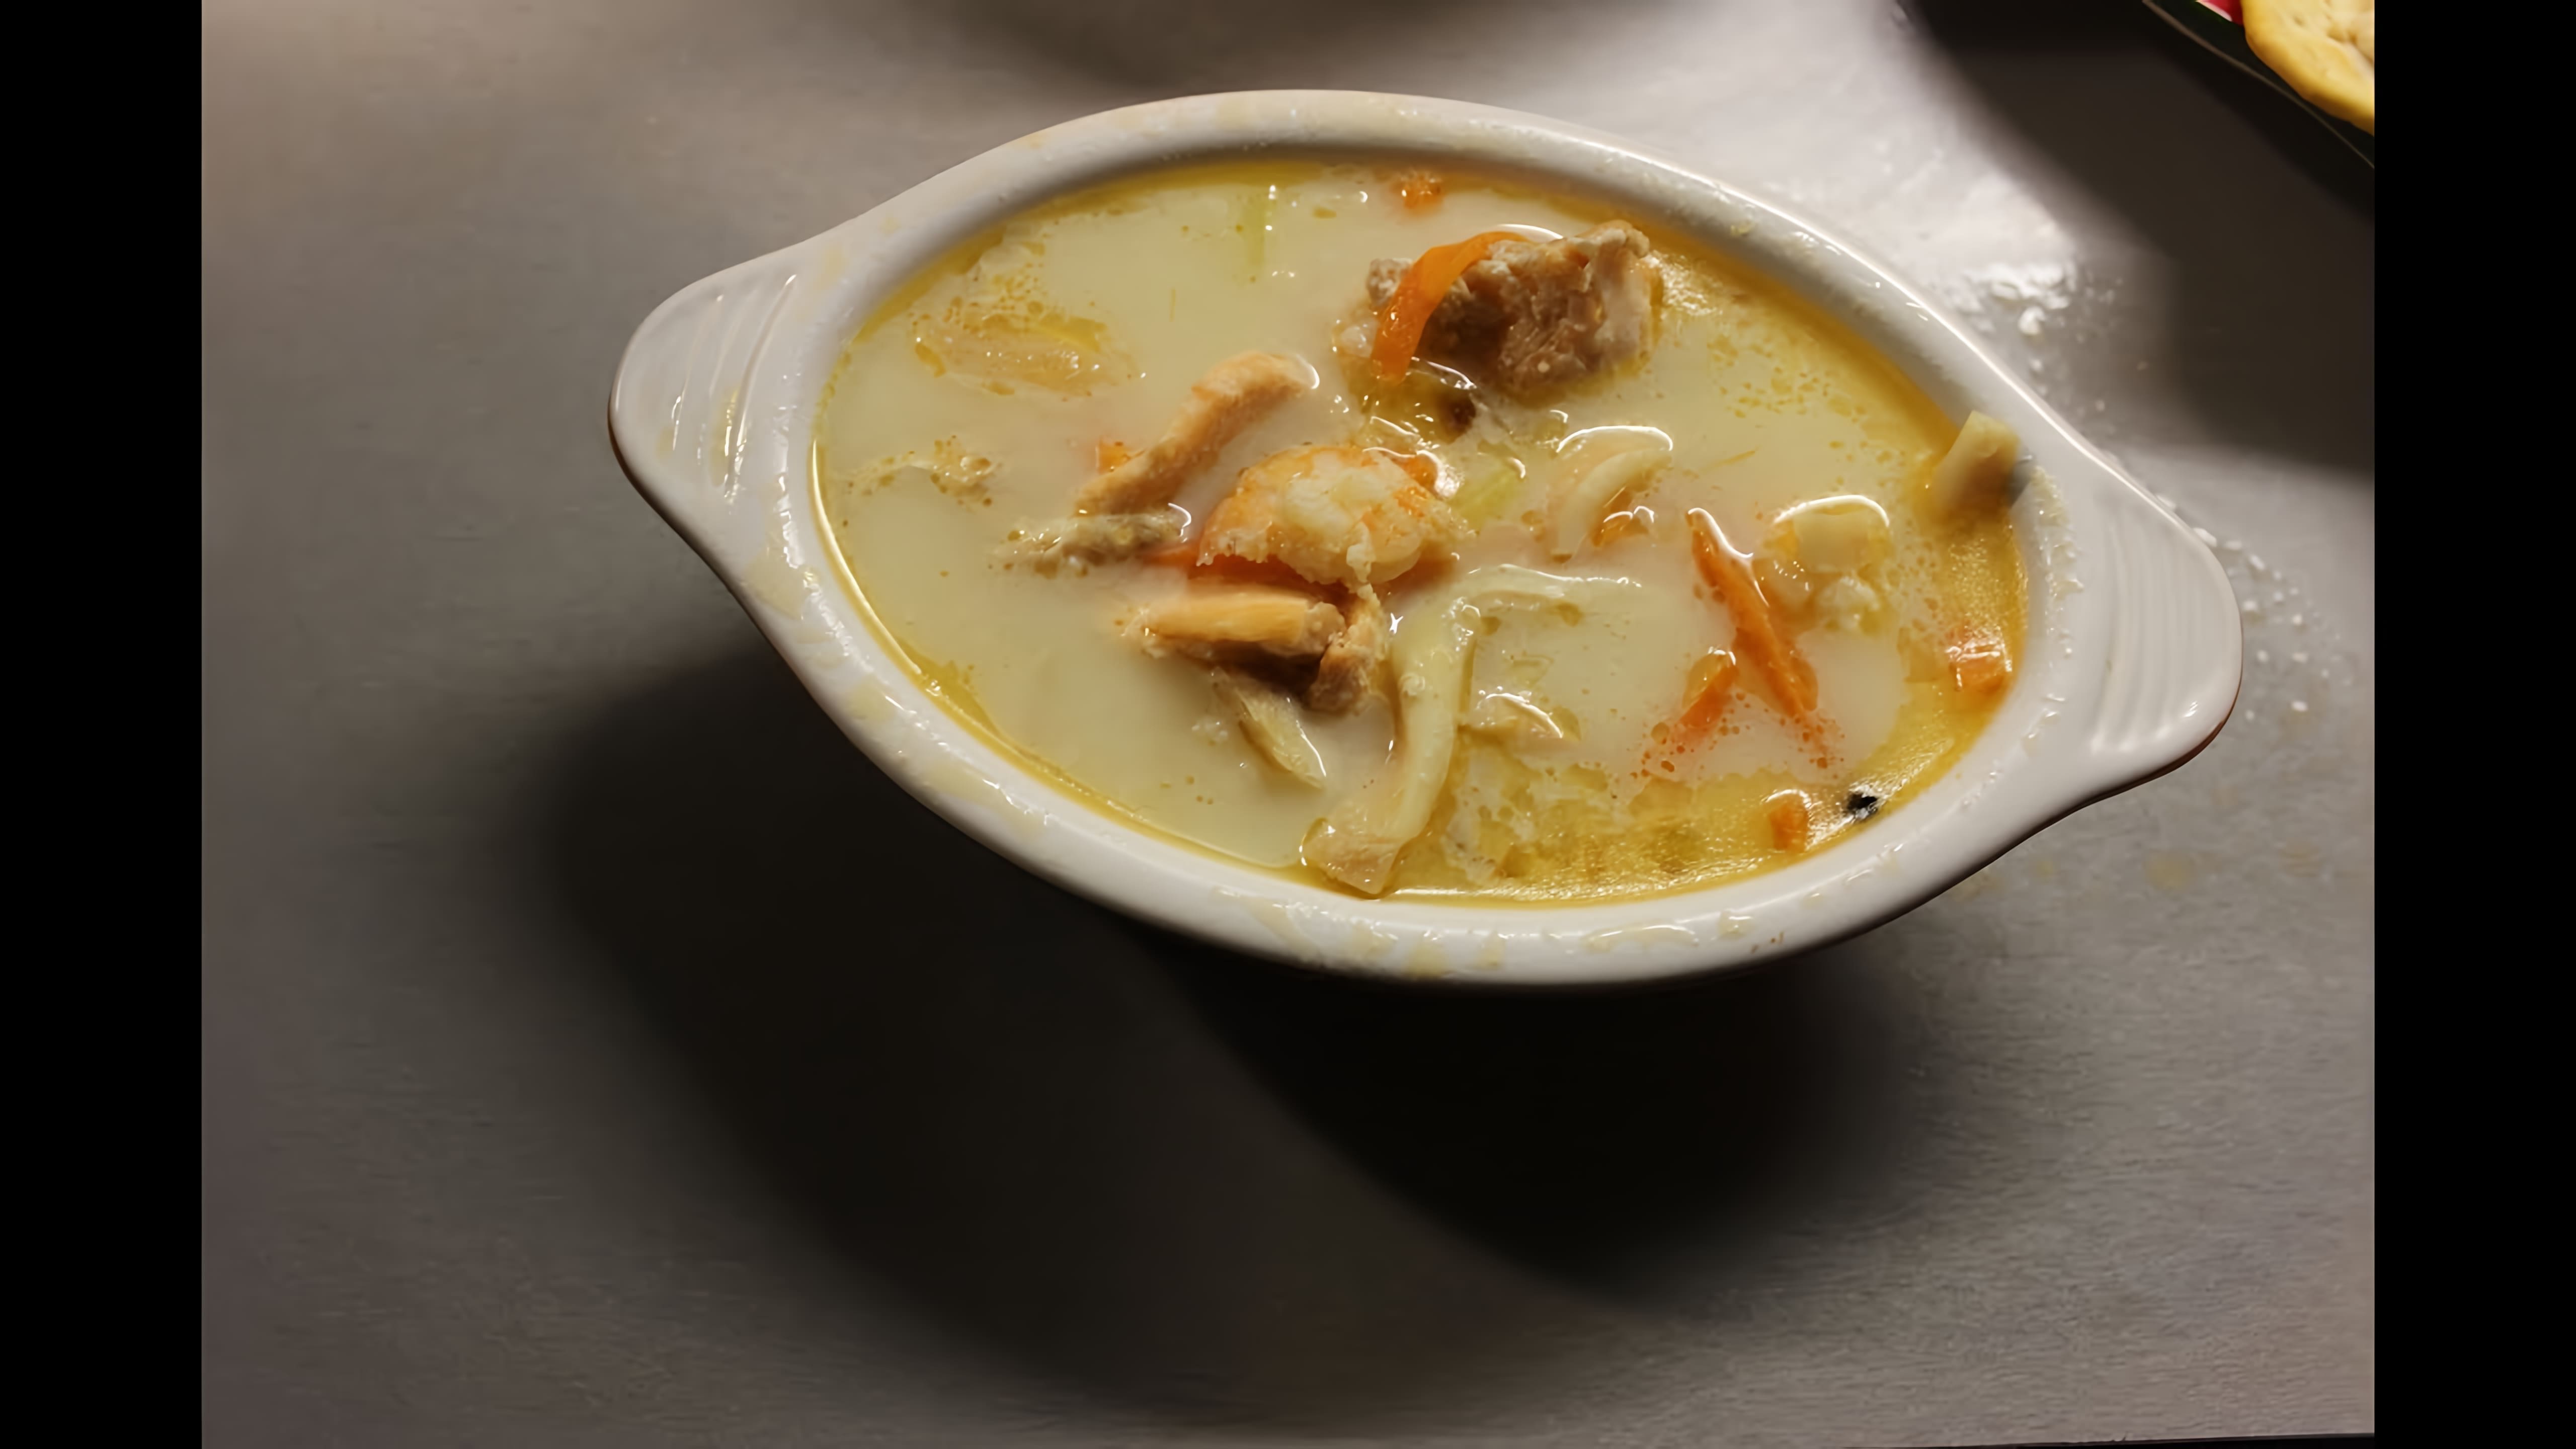 В этом видео демонстрируется процесс приготовления норвежского сливочного супа из сёмги